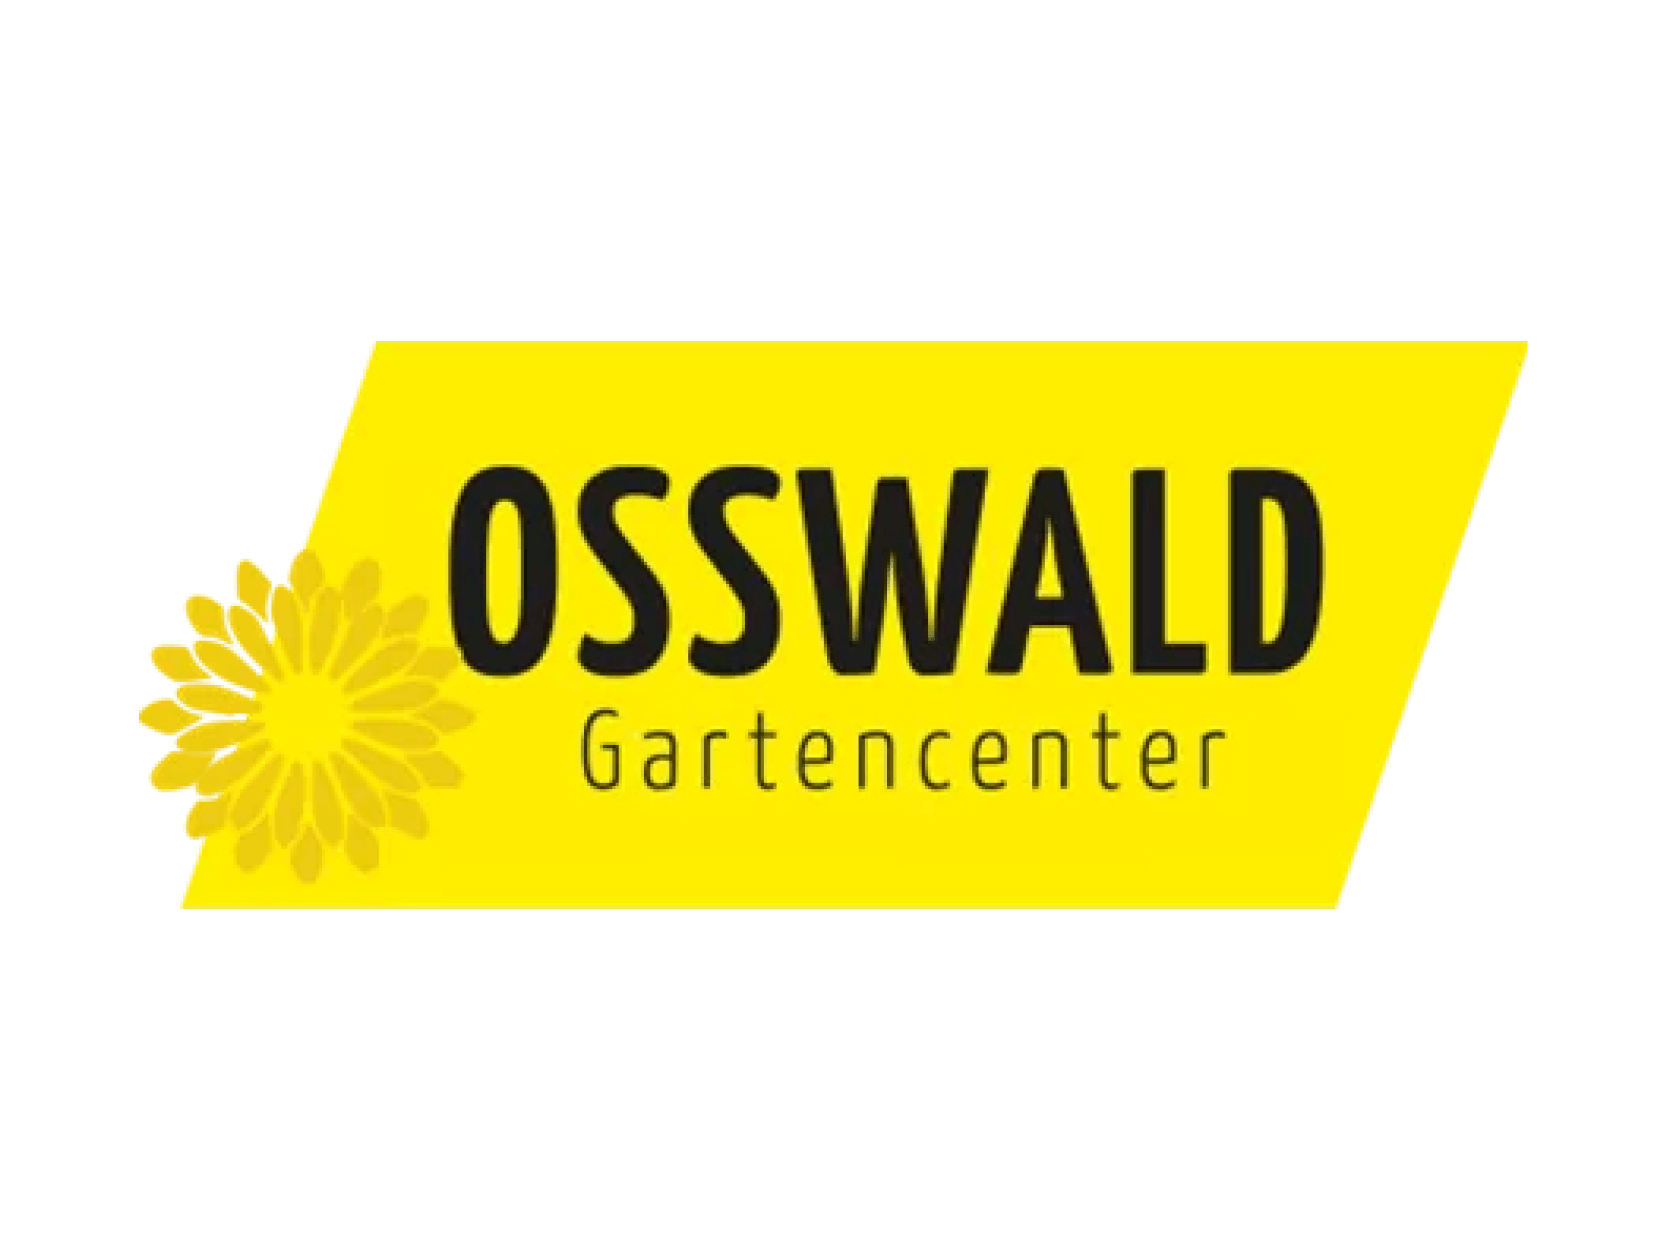 Osswald Gartencenter